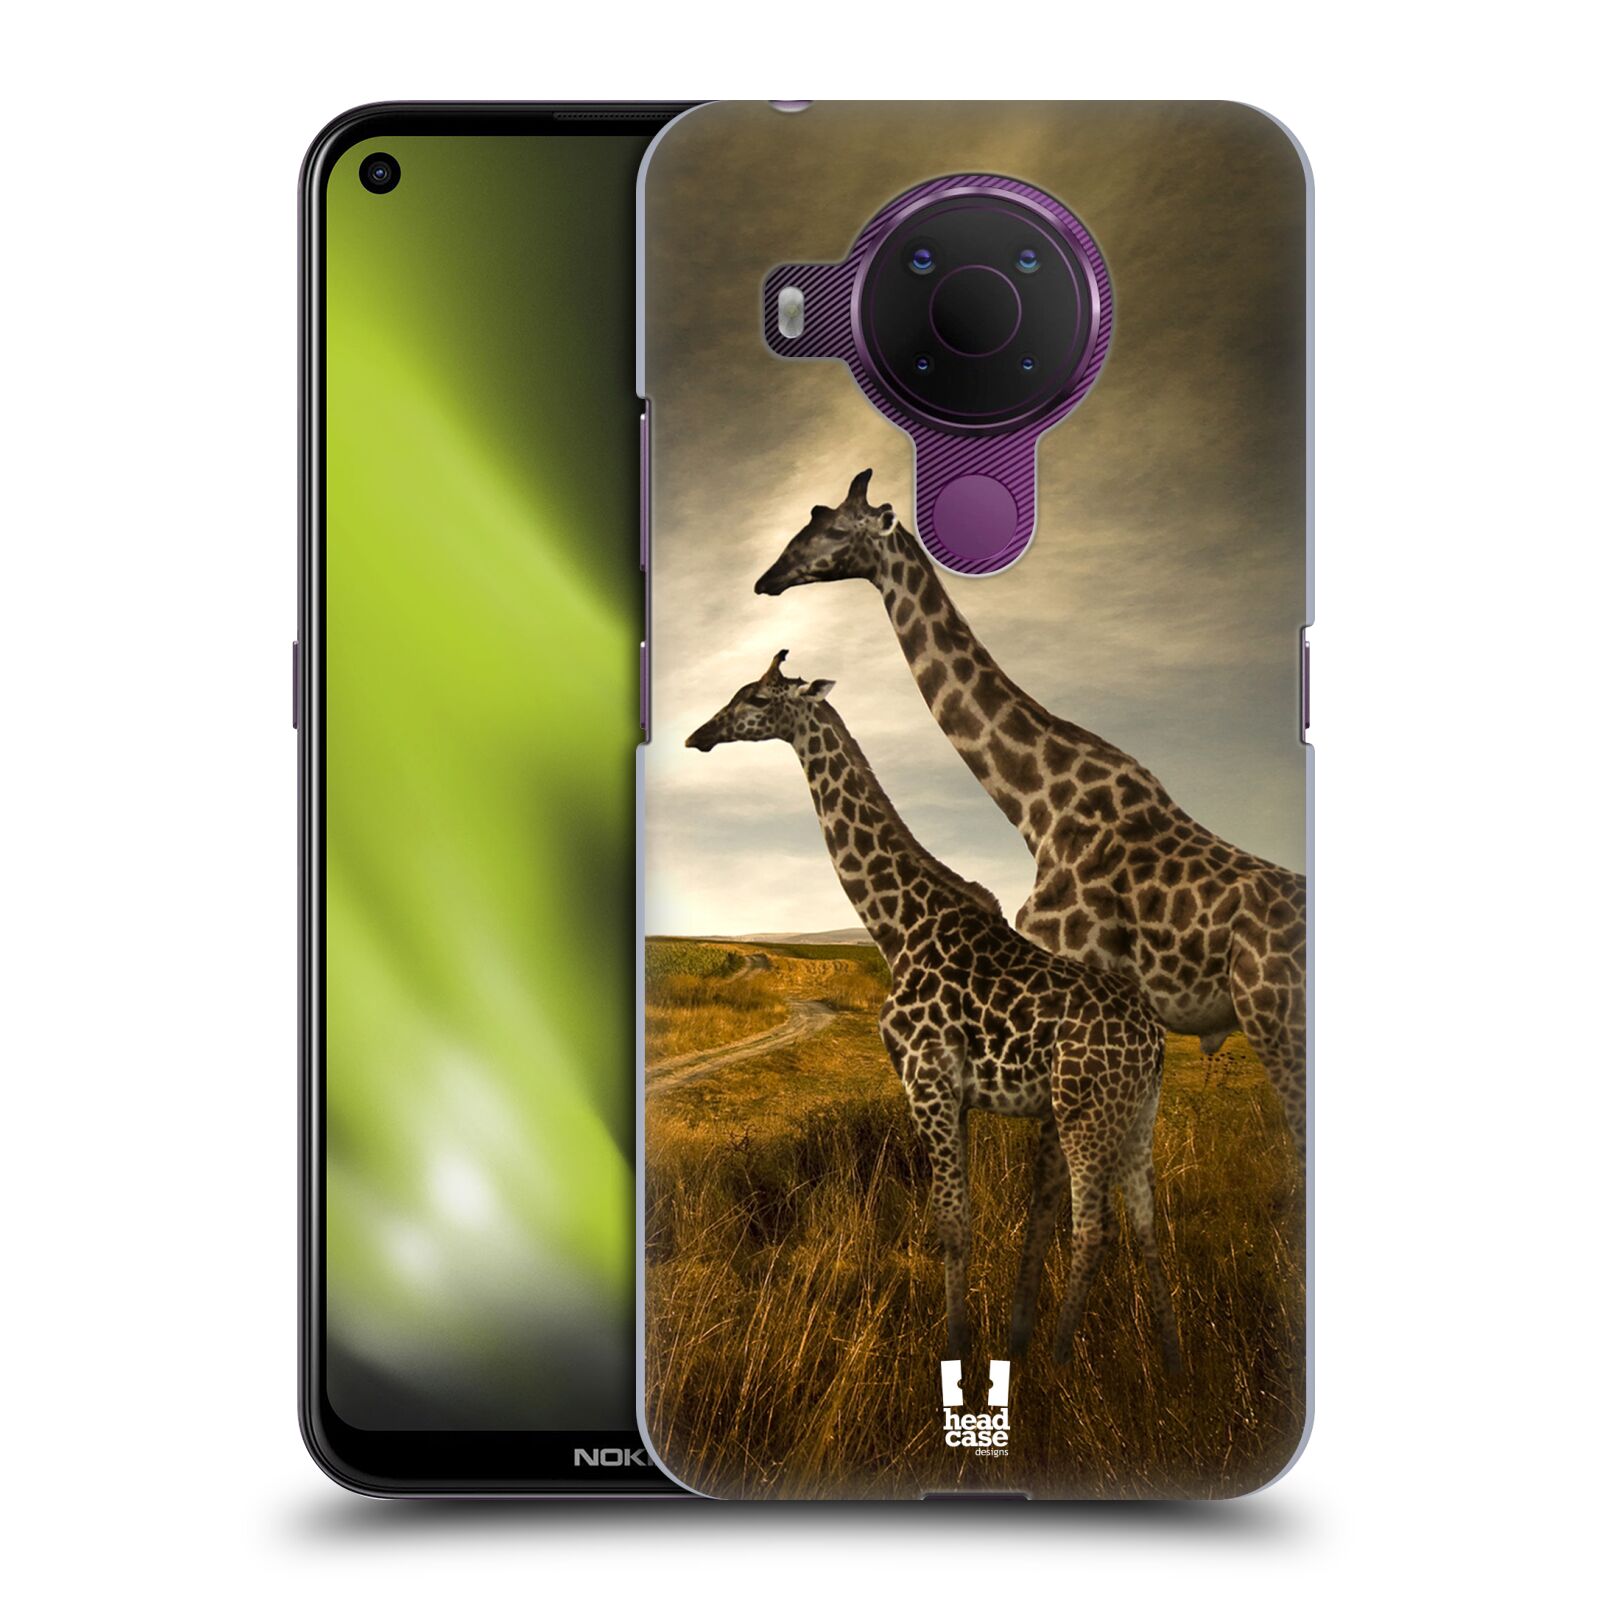 Zadní obal pro mobil Nokia 5.4 - HEAD CASE - Svět zvířat žirafy